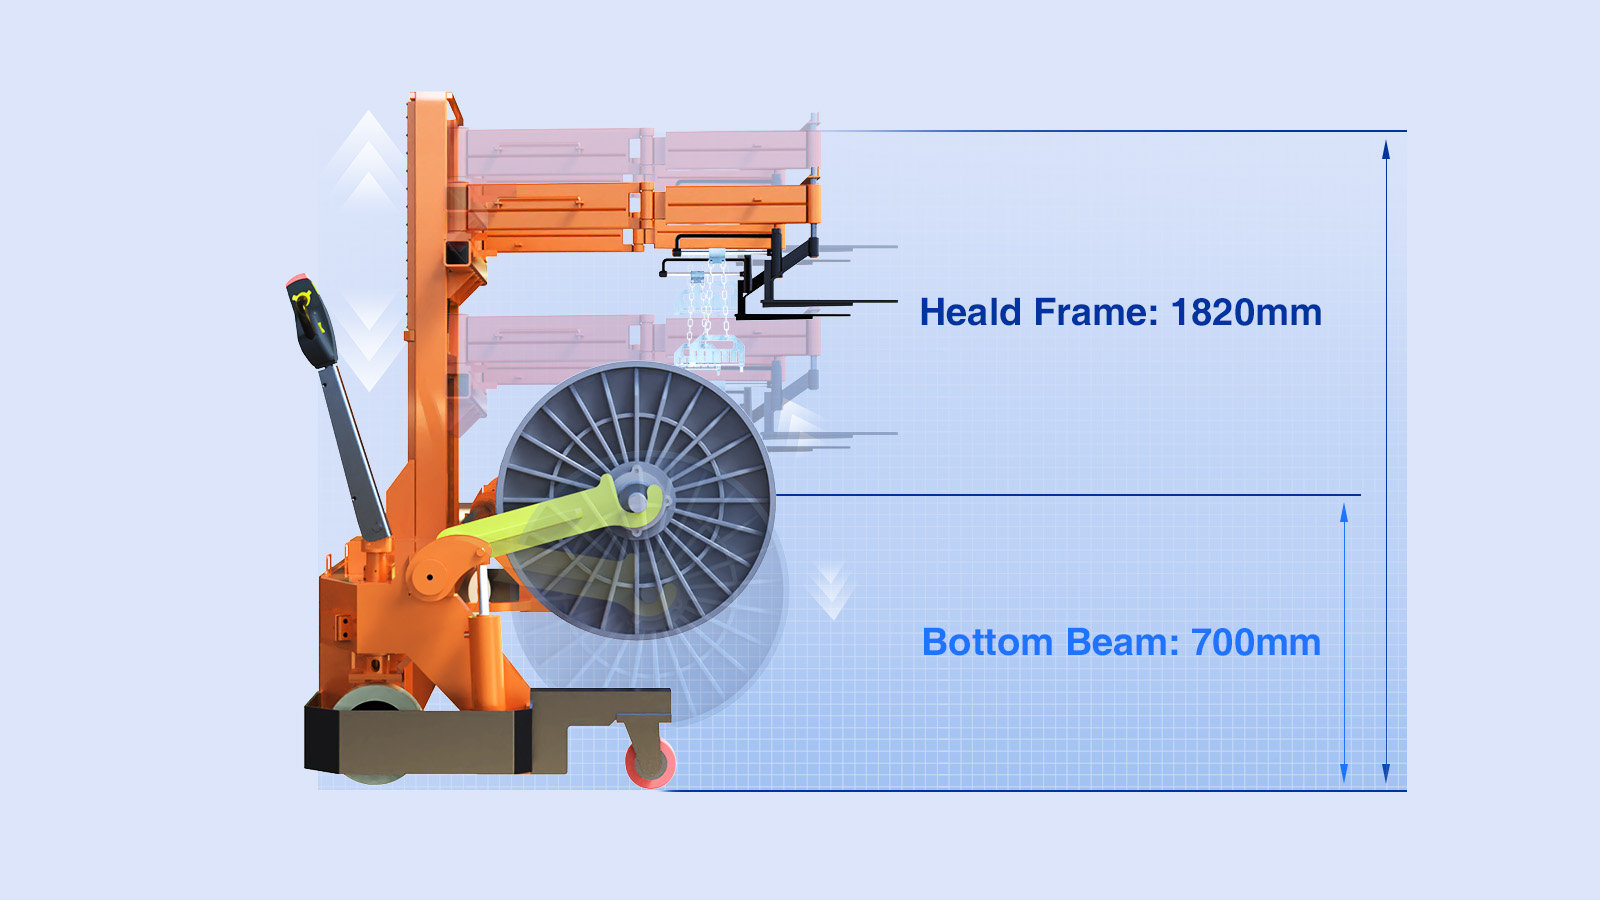 Motorized Warp Beam Lift Trolley Lifting Height 700 mm (Bottom Beam), 1820 mm (Heald Frame)